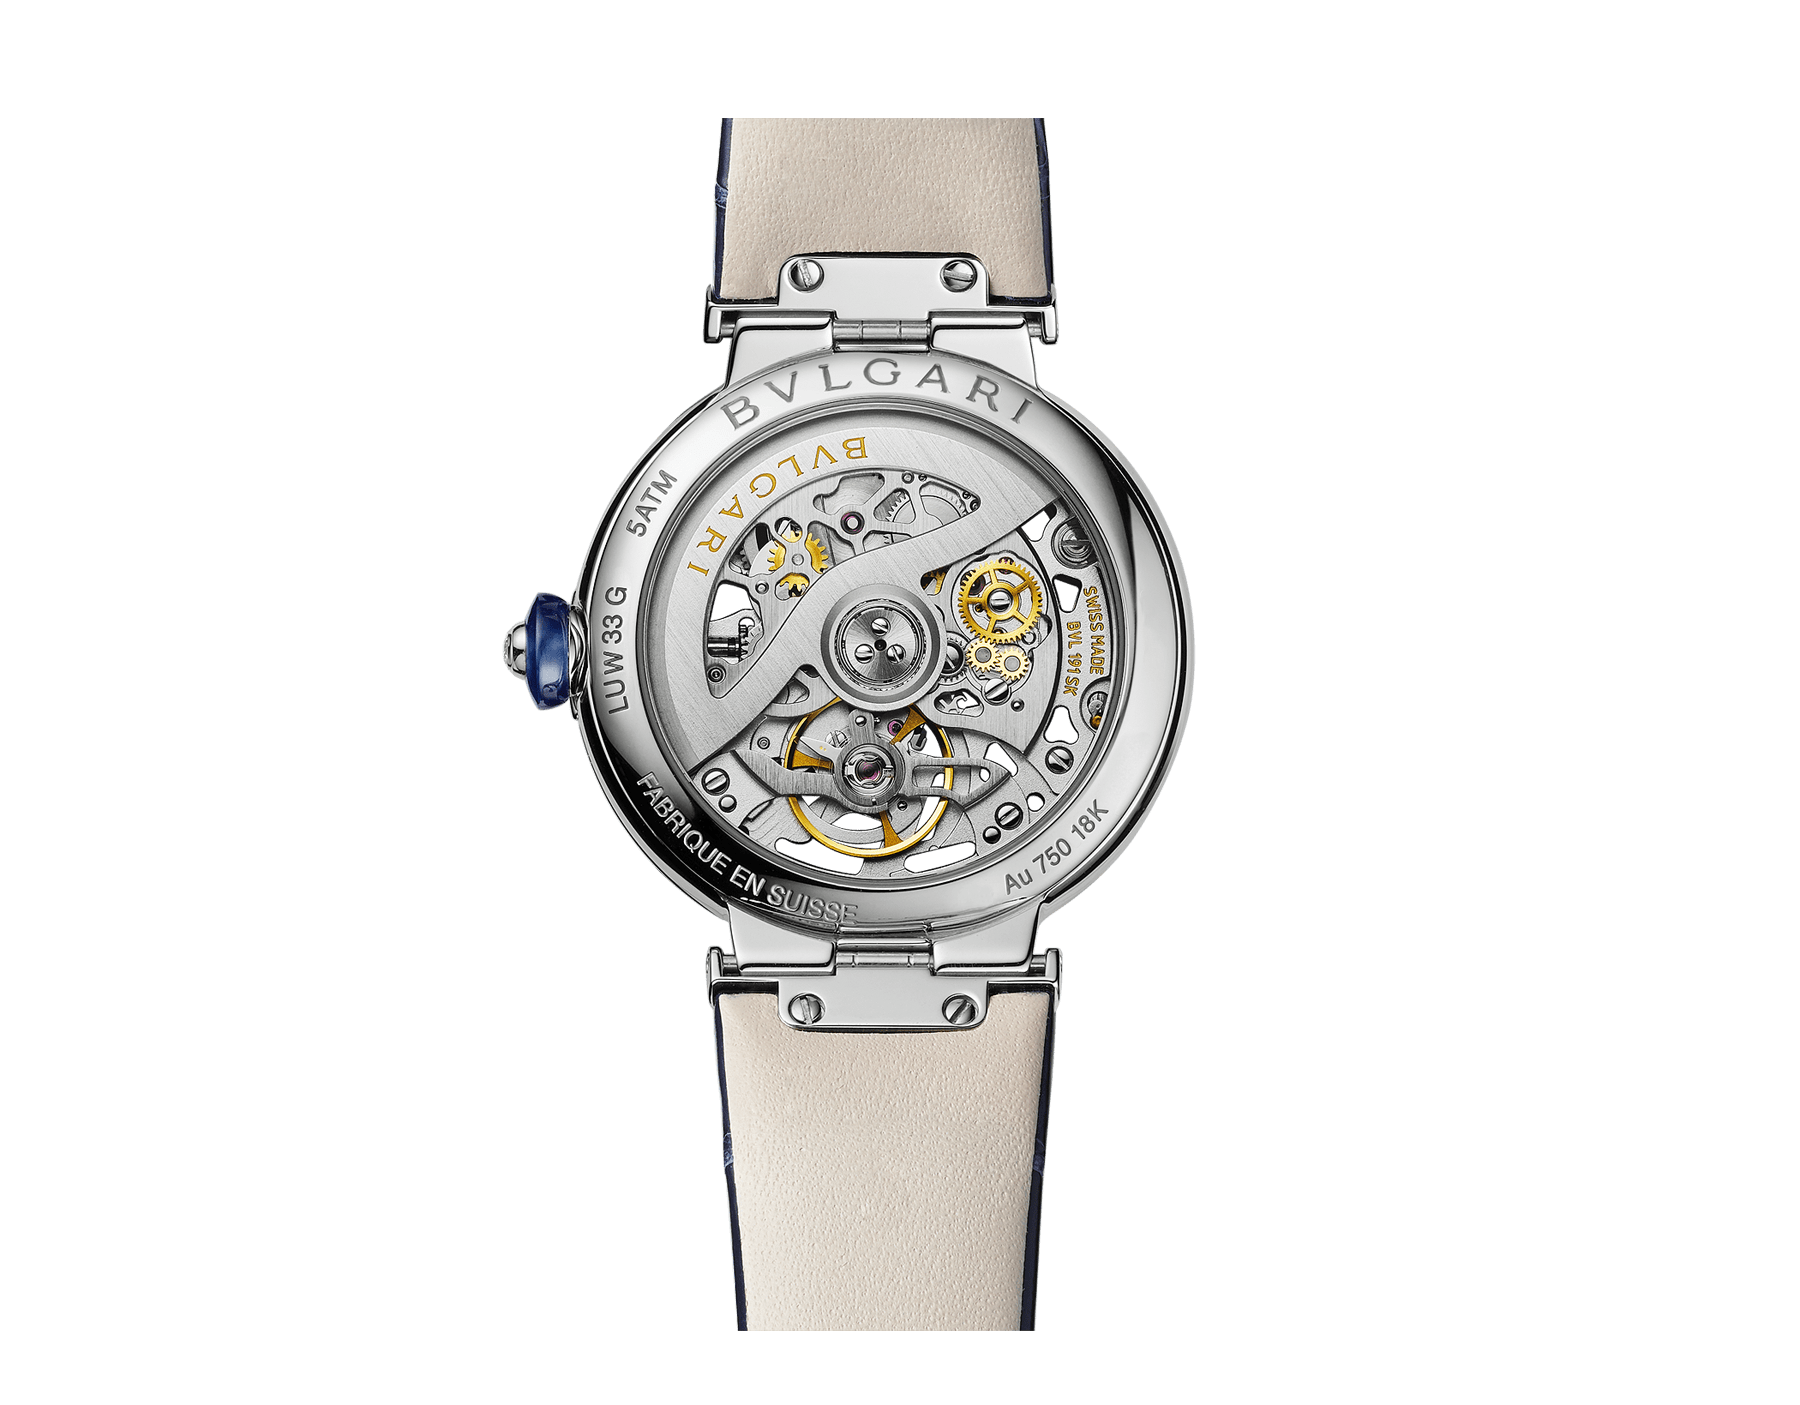 bvlgari automatic watch gold